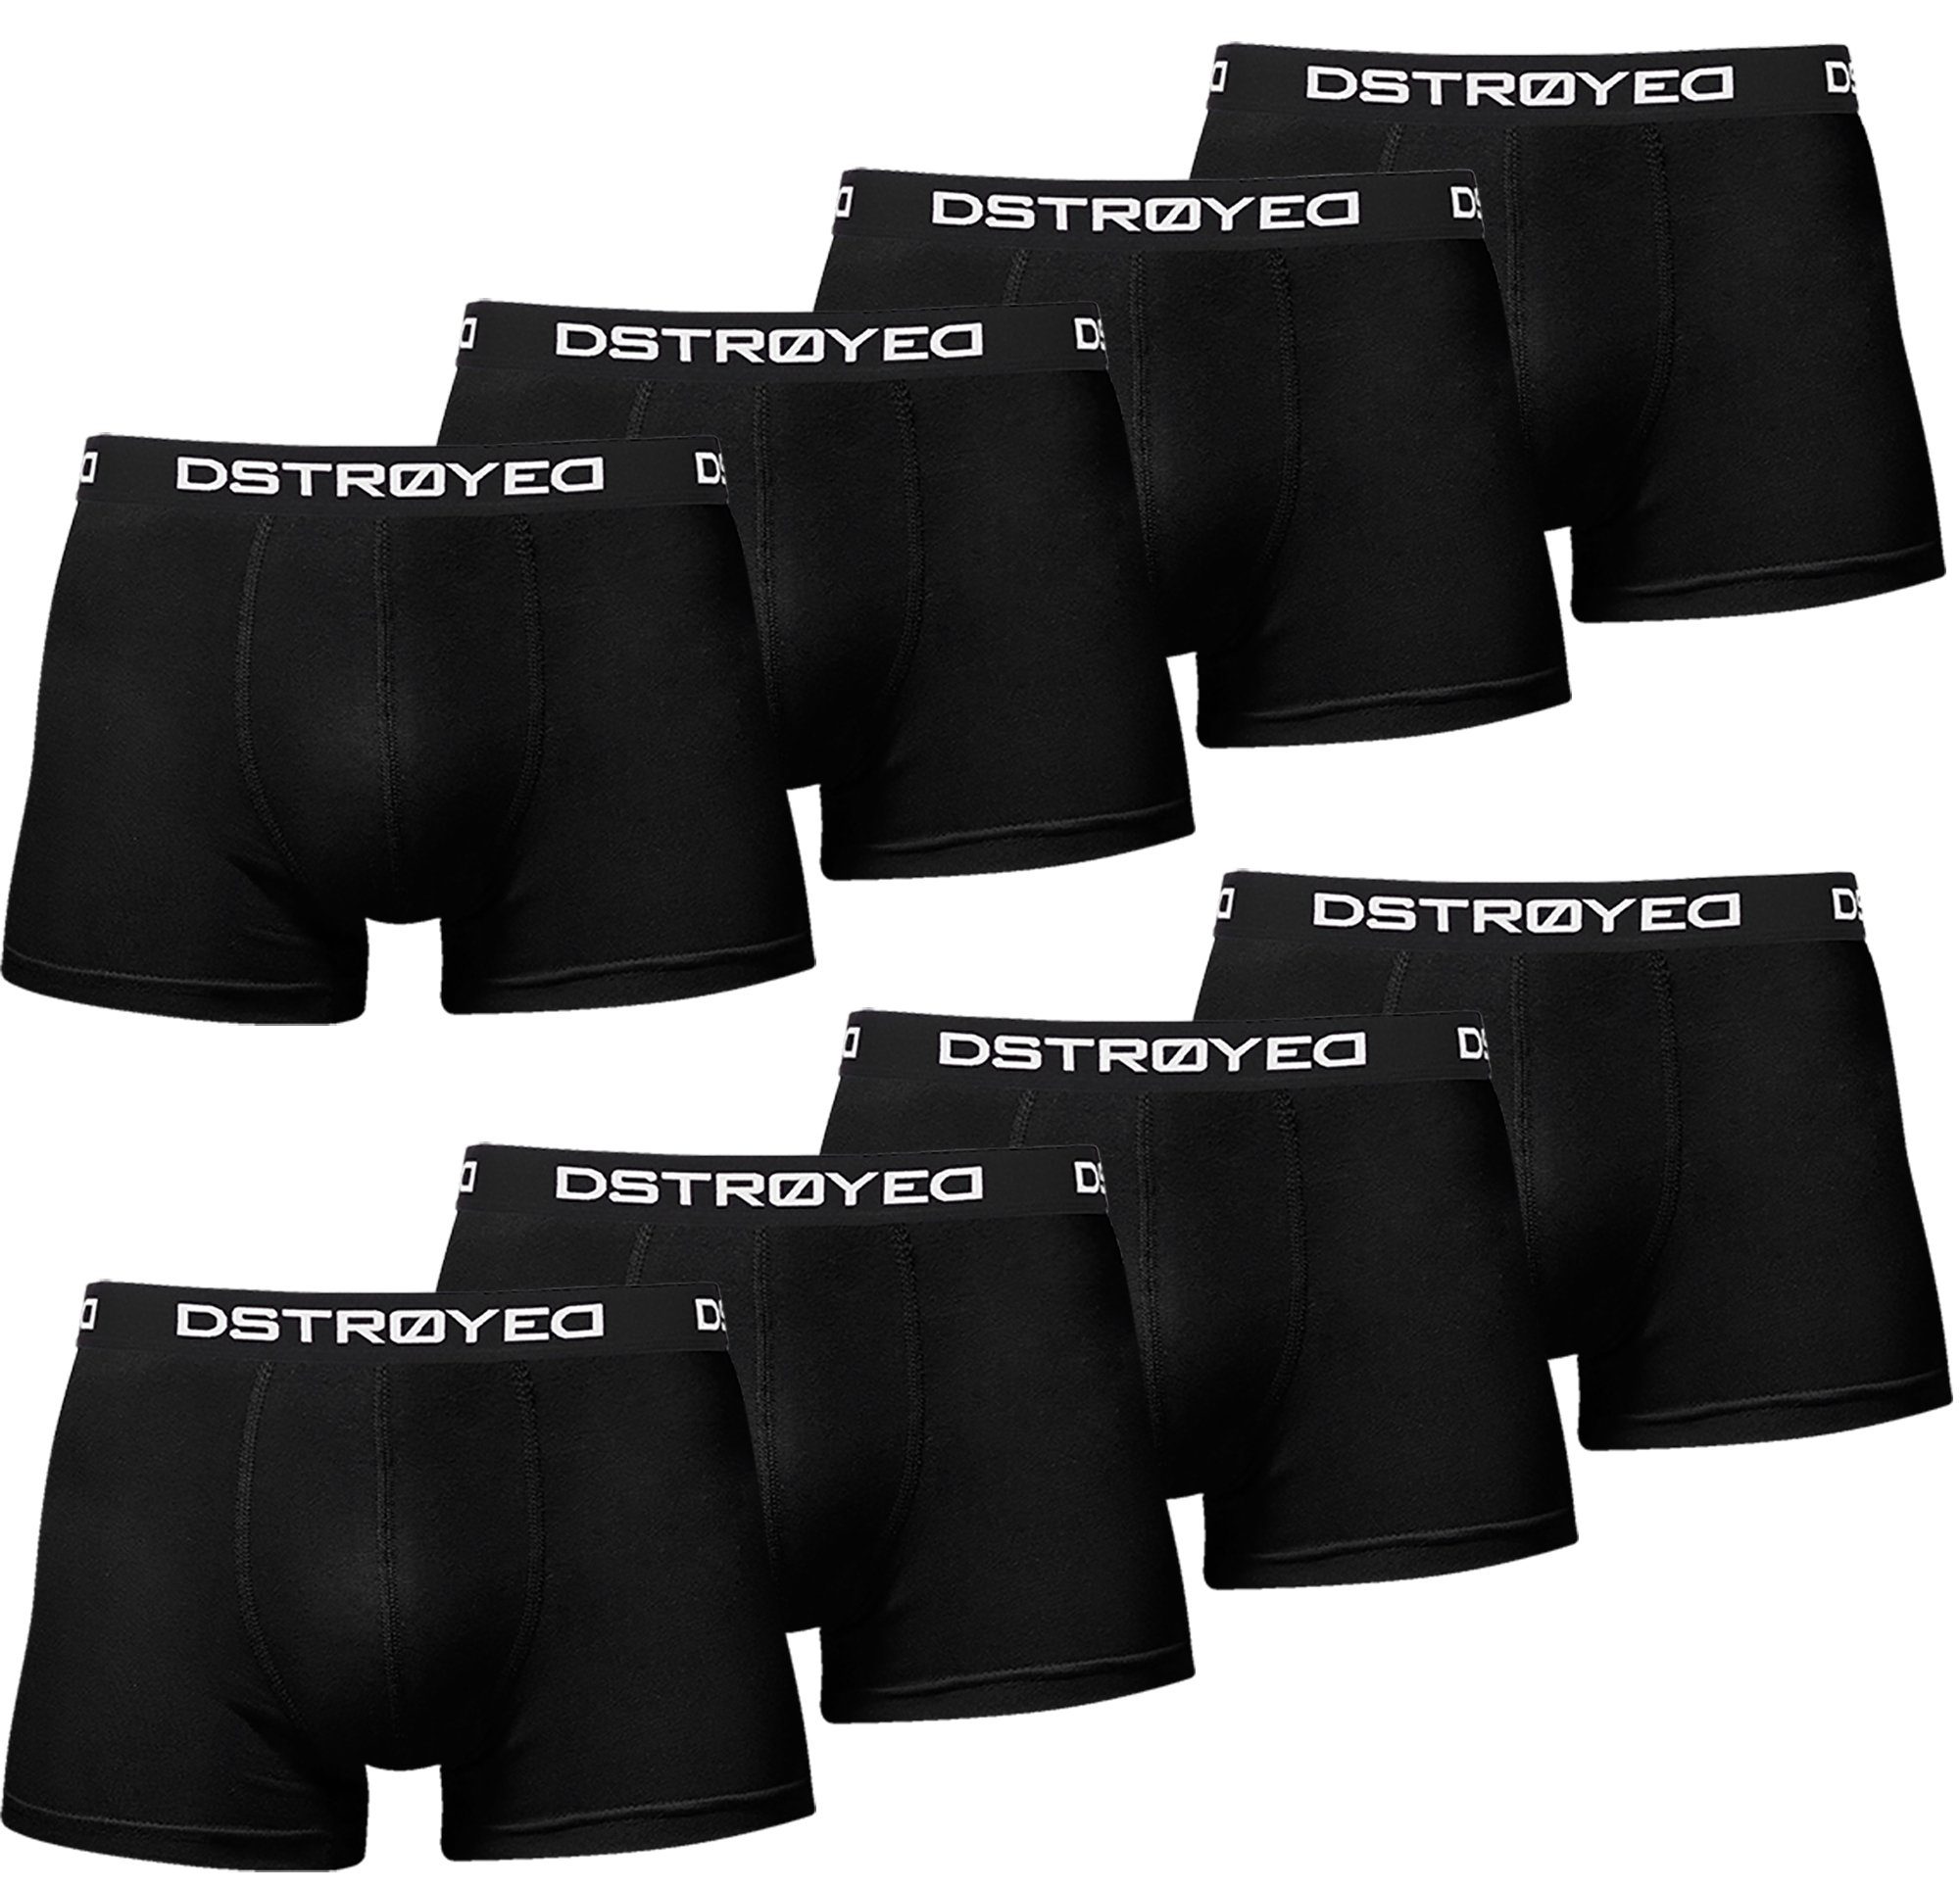 DSTROYED Boxershorts Herren Männer Unterhosen Baumwolle Premium Qualität perfekte Passform (Vorteilspack, 8er, 8er Pack) 317b-schwarz